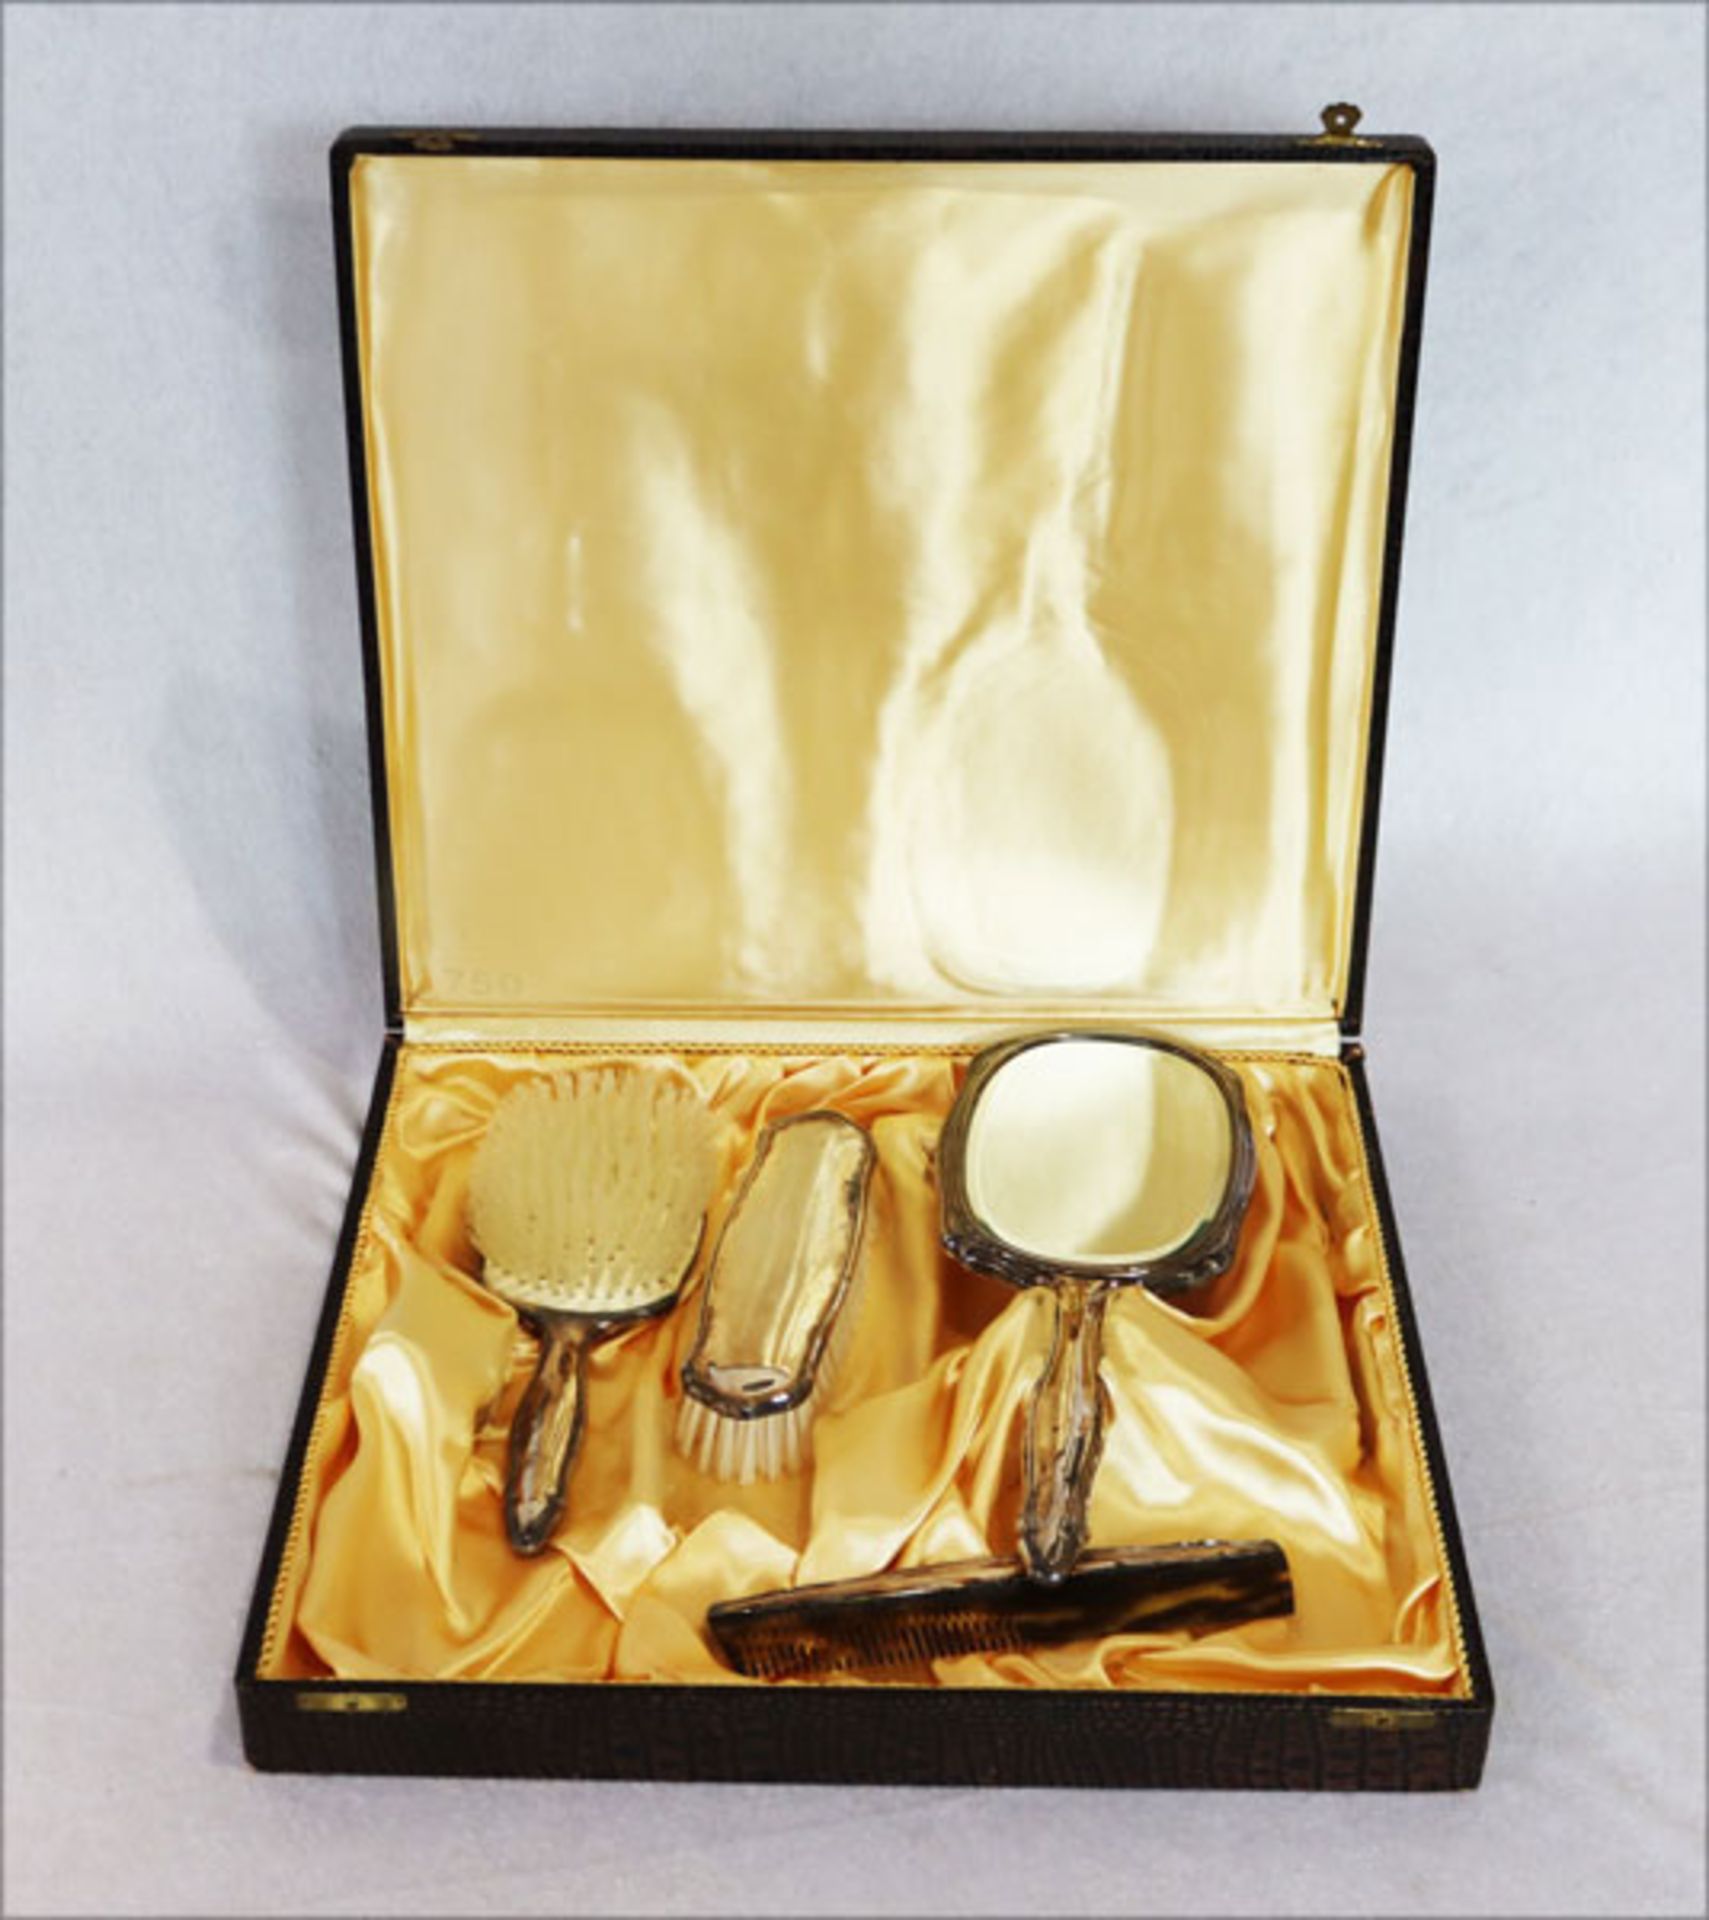 Bürstengarnitur, 835 Silber, Handspiegel, 2 Bürsten und Kamm, gut erhalten in Originalkarton